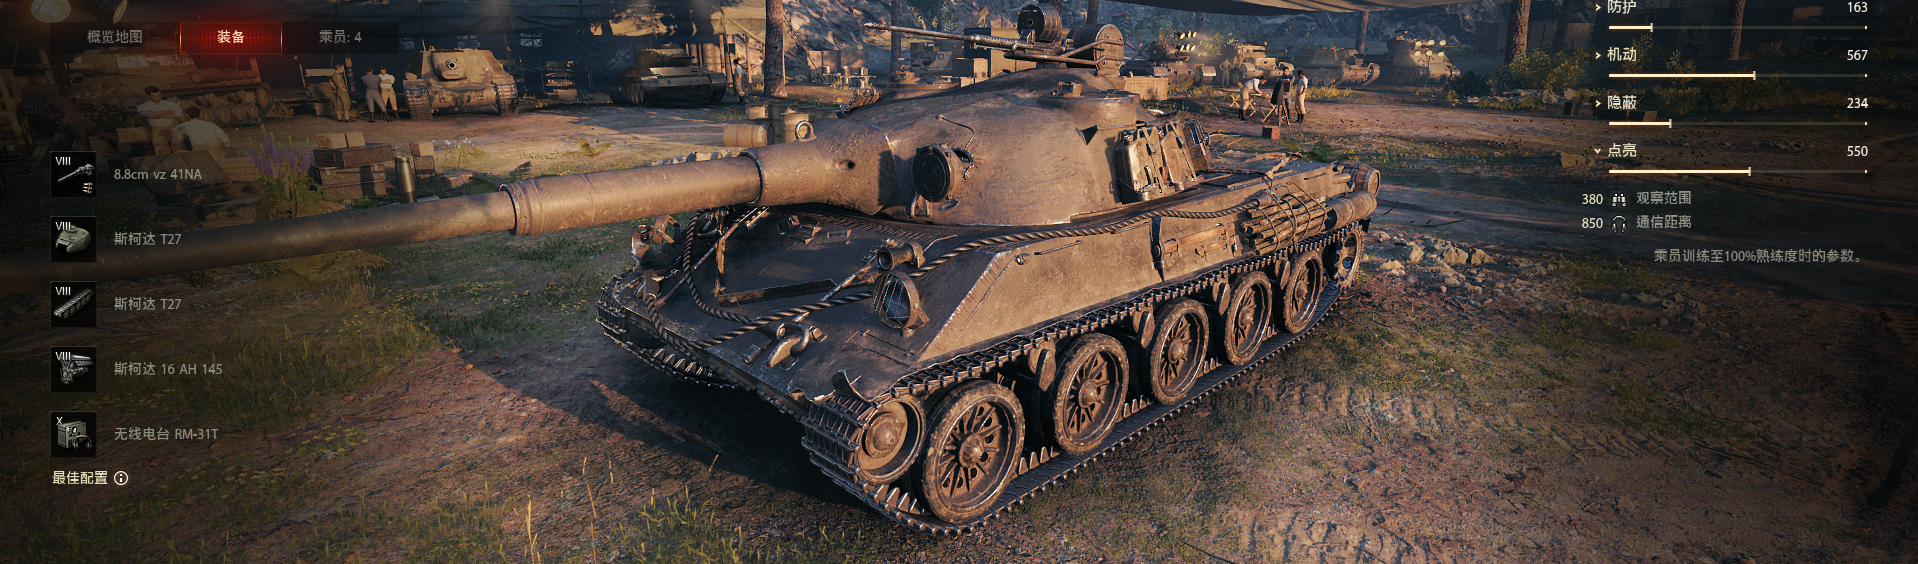 坦克世界自制mod 斯柯达t27 3d涂装替换mod 哔哩哔哩